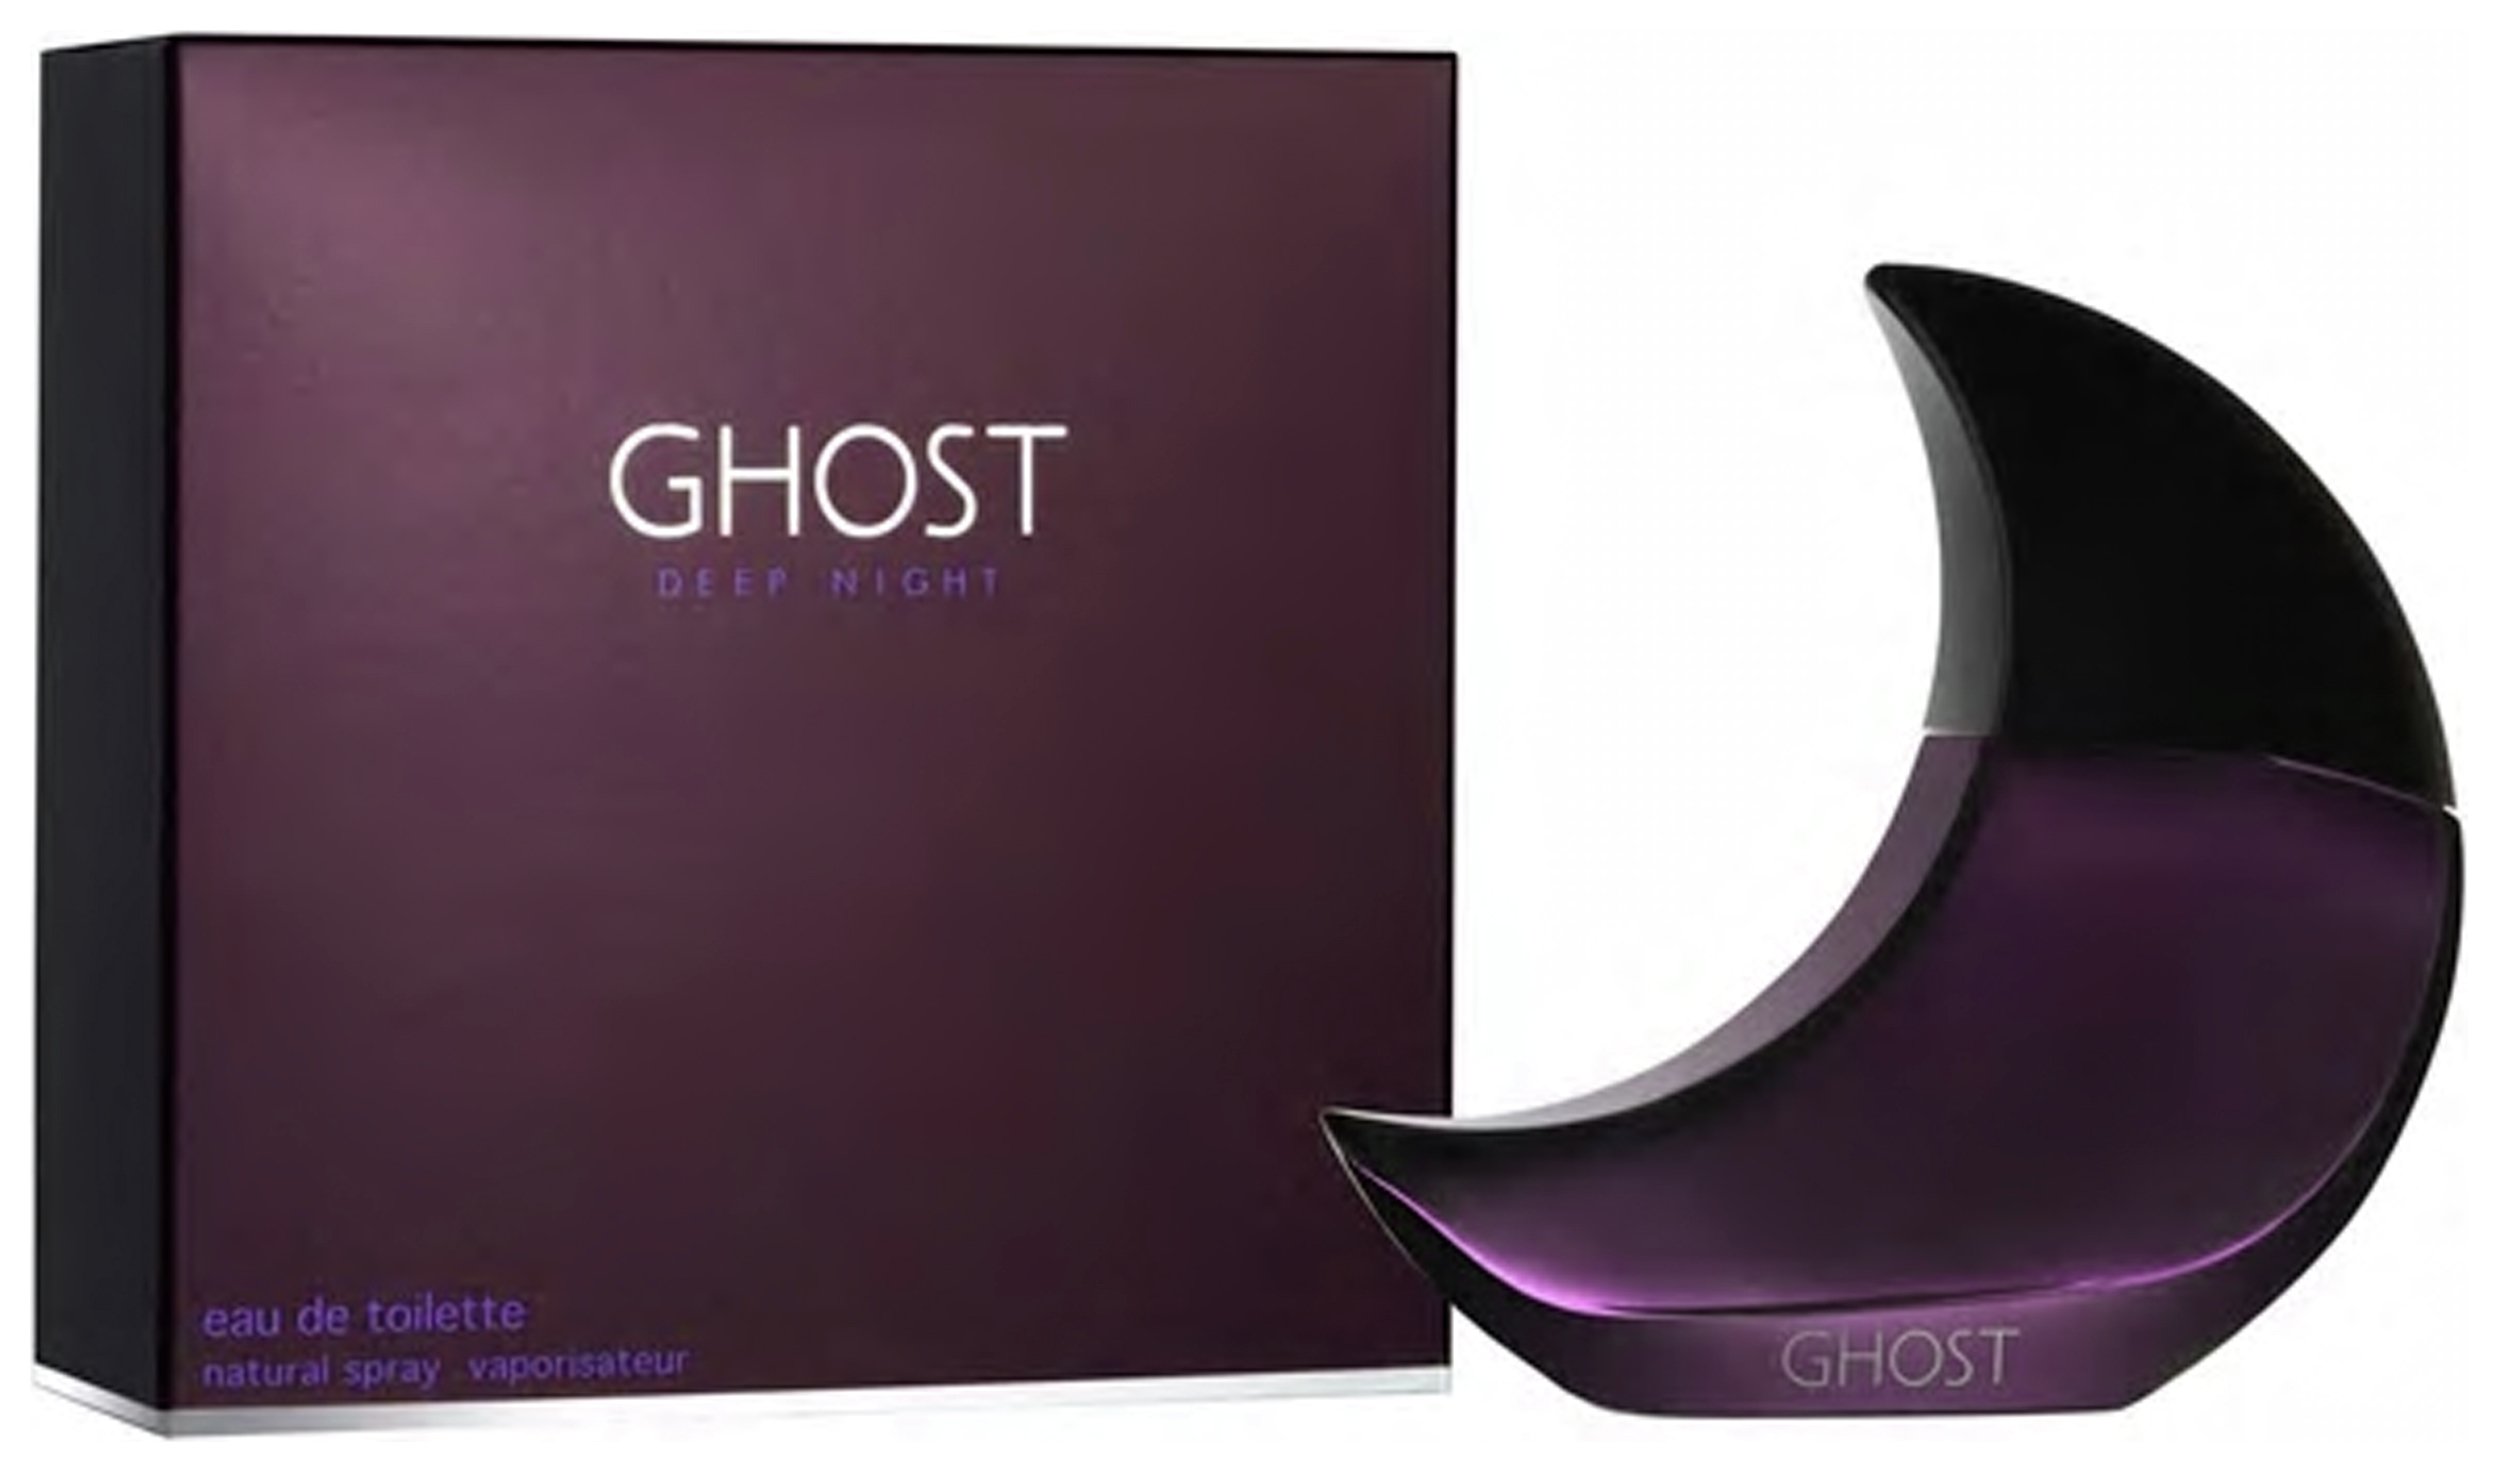 Ghost Deep Night Eau de Toilette for Women - 30ml